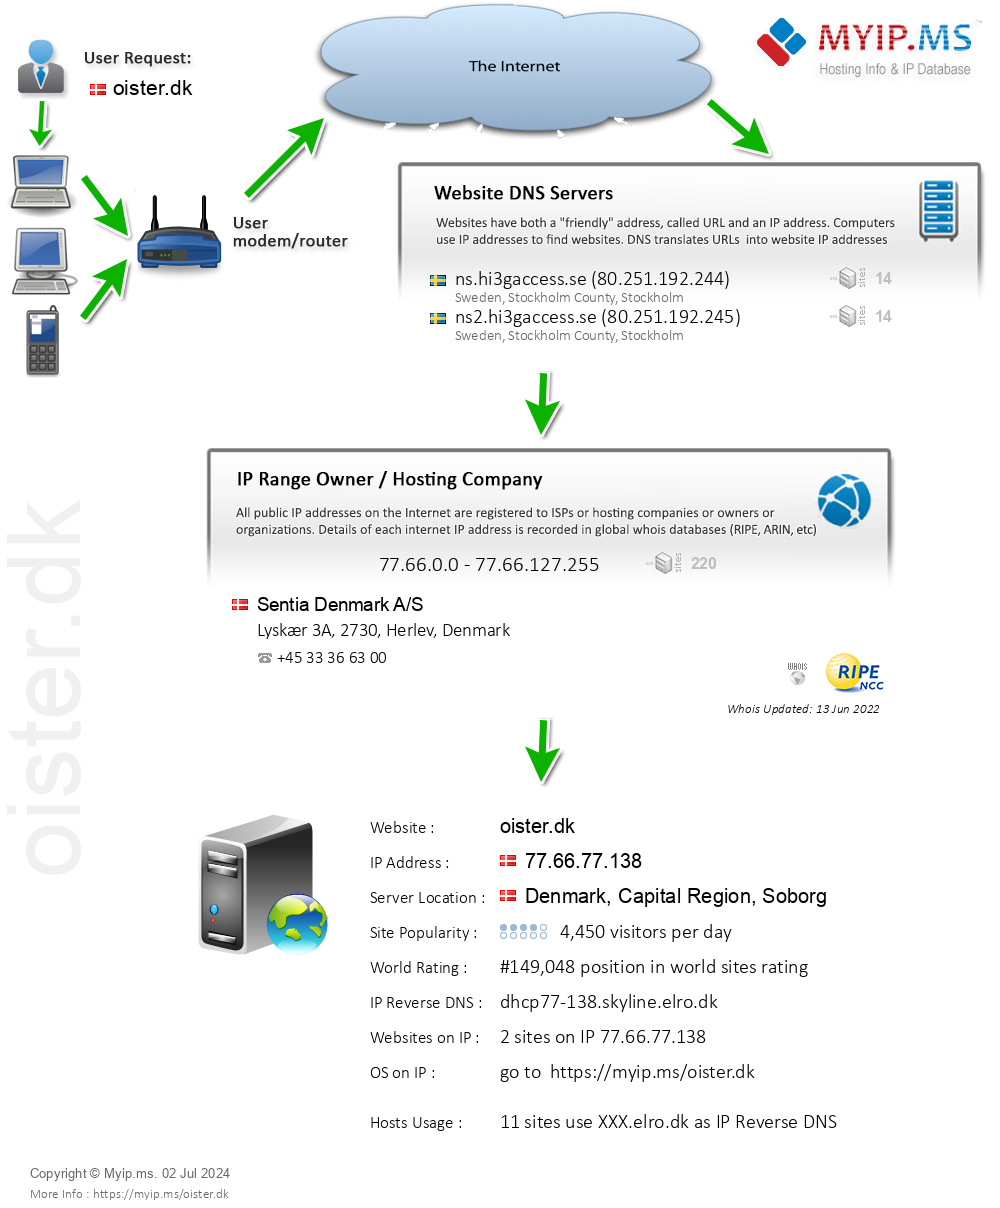 Oister.dk - Website Hosting Visual IP Diagram